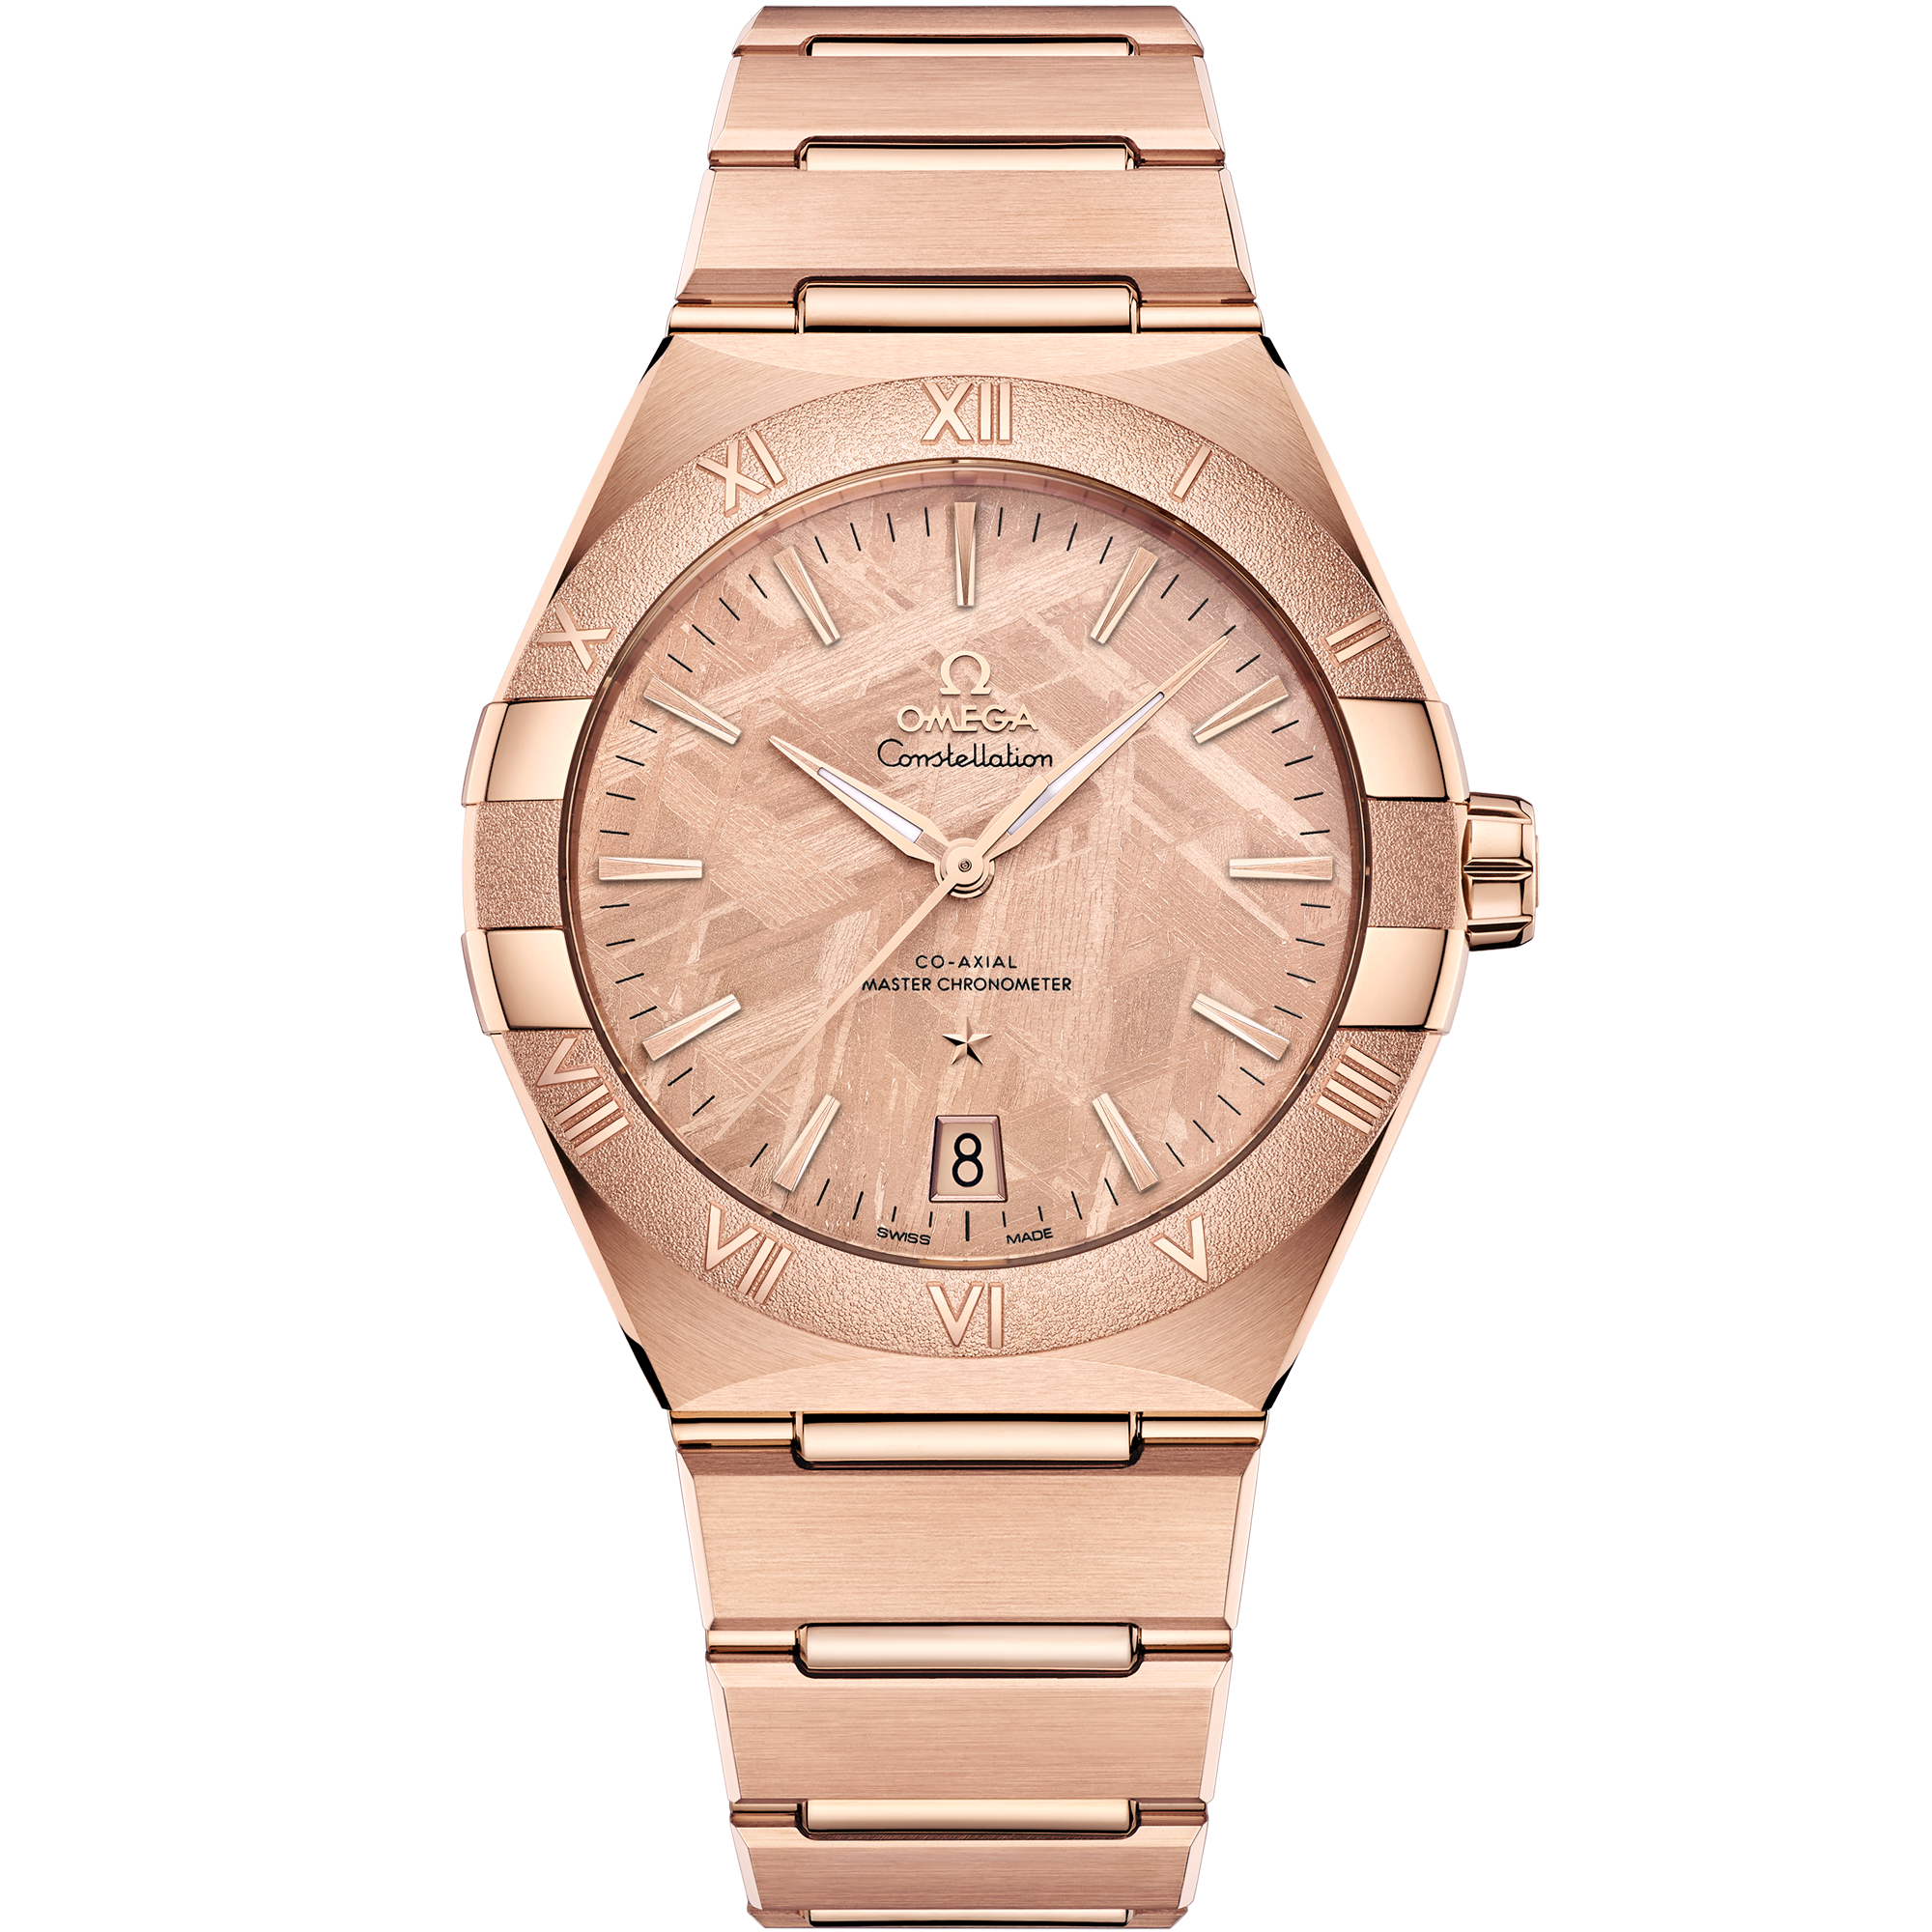 Uhr mit Pink Zifferblatt auf Sedna™-Gold Gehäuse mit Sedna™-Goldband bracelet - Constellation 41 mm, Sedna™-Gold mit Sedna™-Goldband - 131.50.41.21.99.002